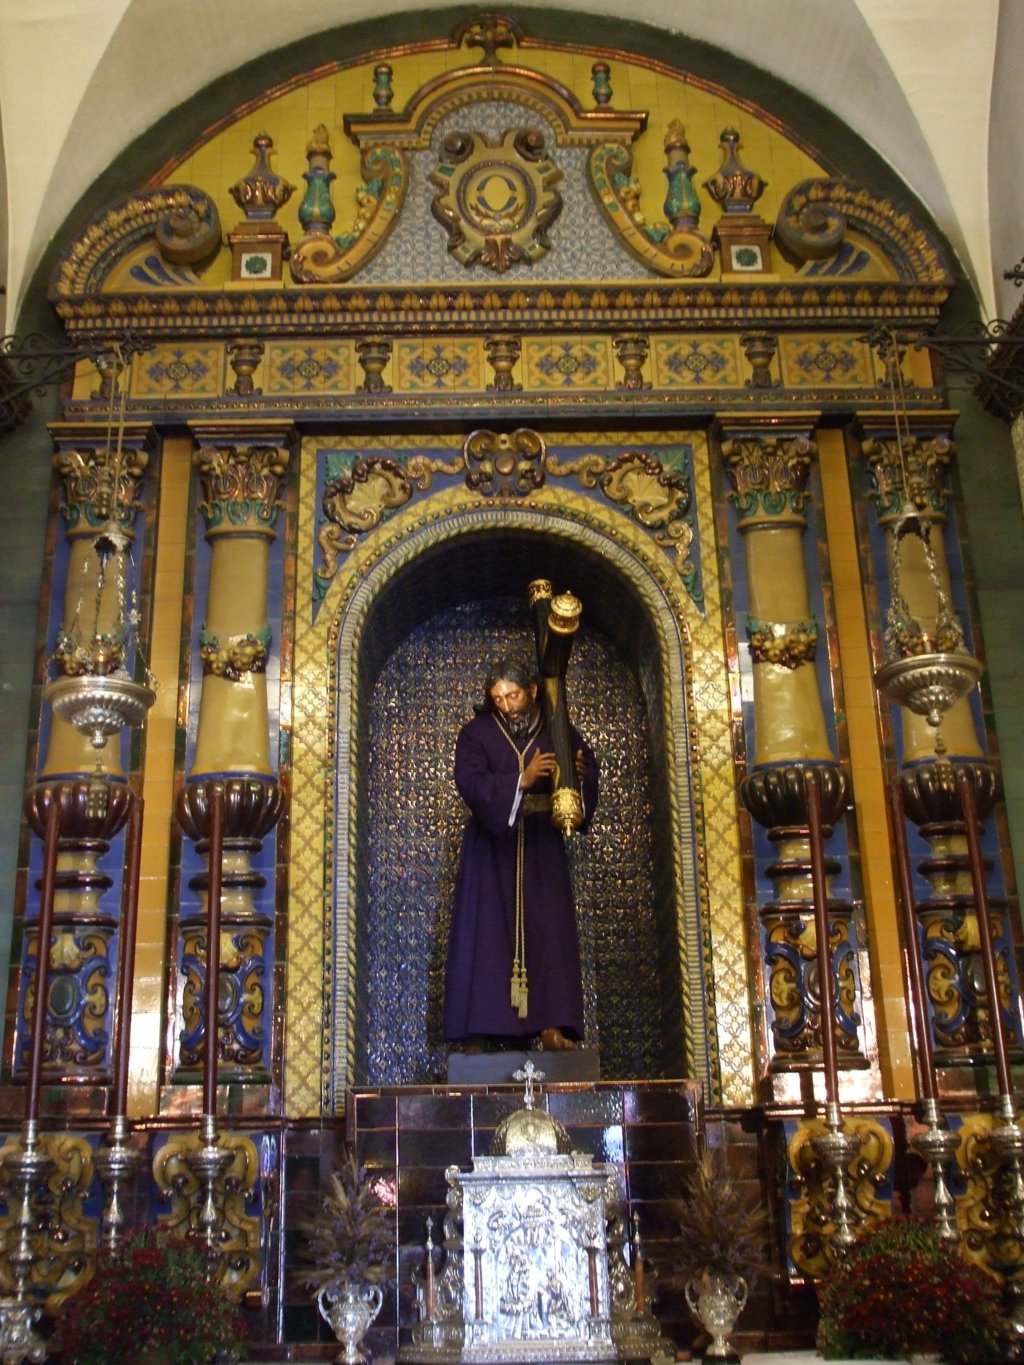 02919. Retablo-altar. Iglesia de Nuestra Señora de la O. Sevilla.